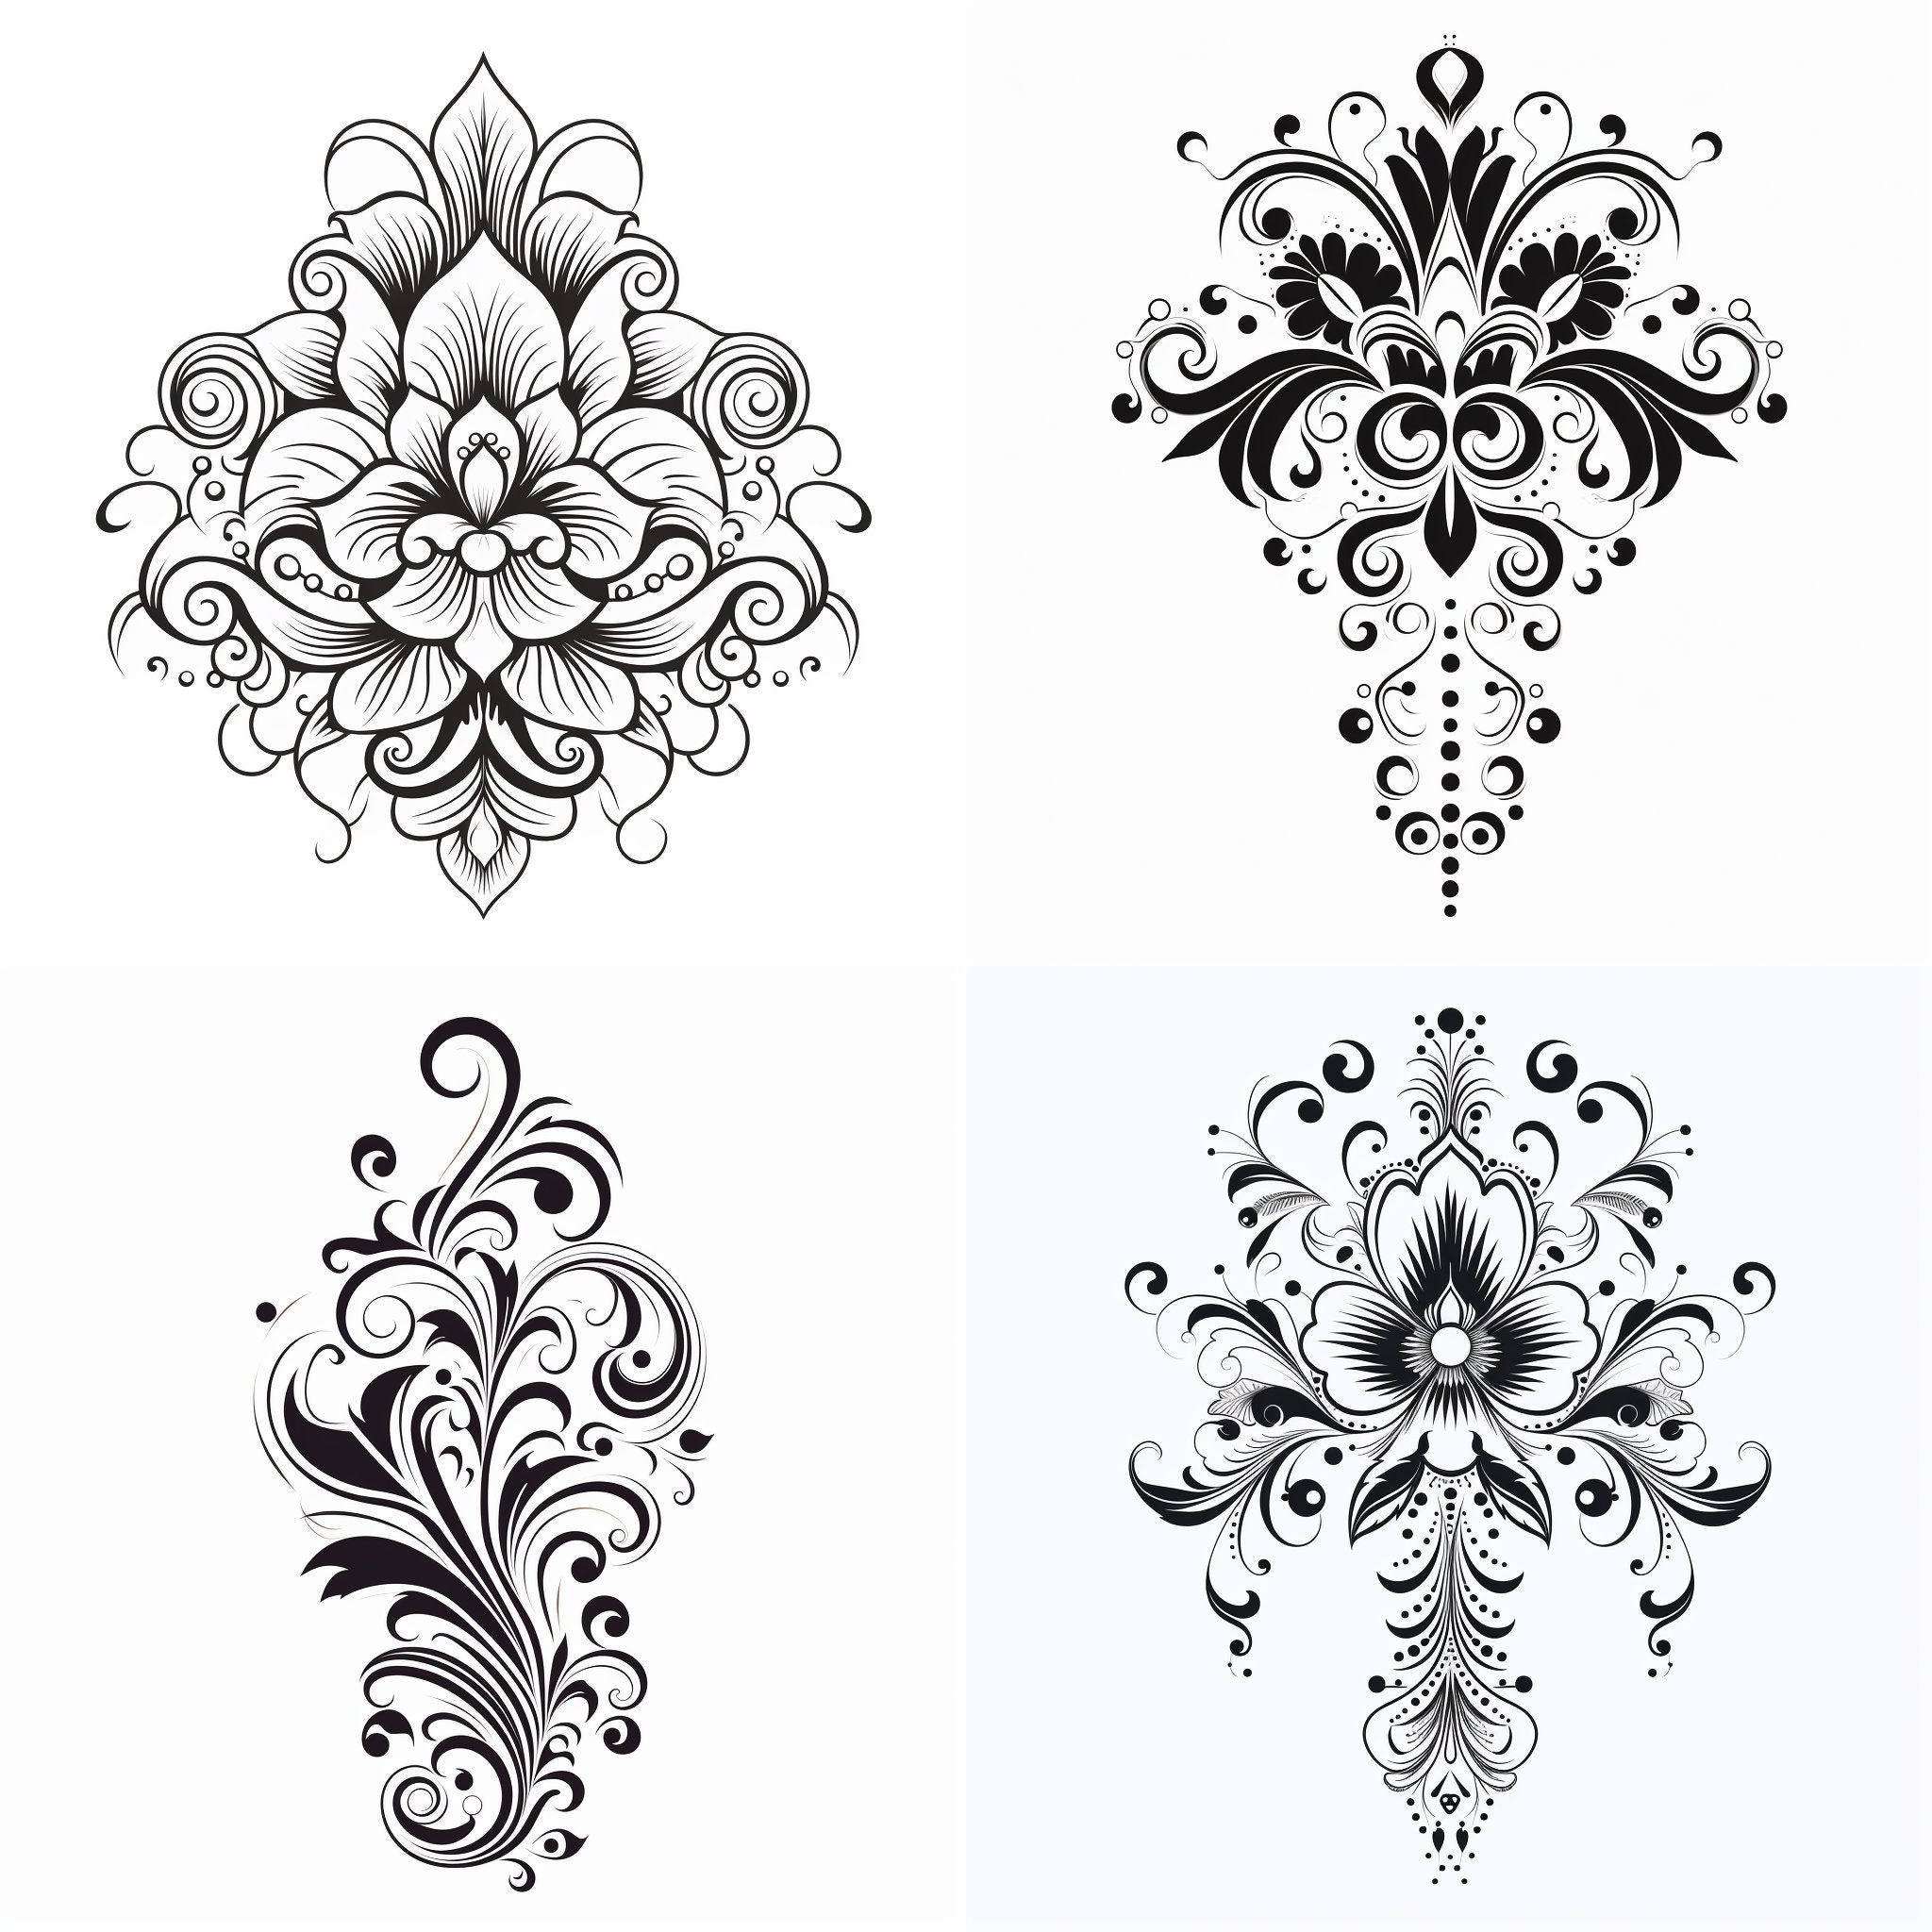 Brush Sets Ornamentals Vols 1 and 2 by Frann Rocha Ornamentals Vol 1  and 2  Tattoo Smart